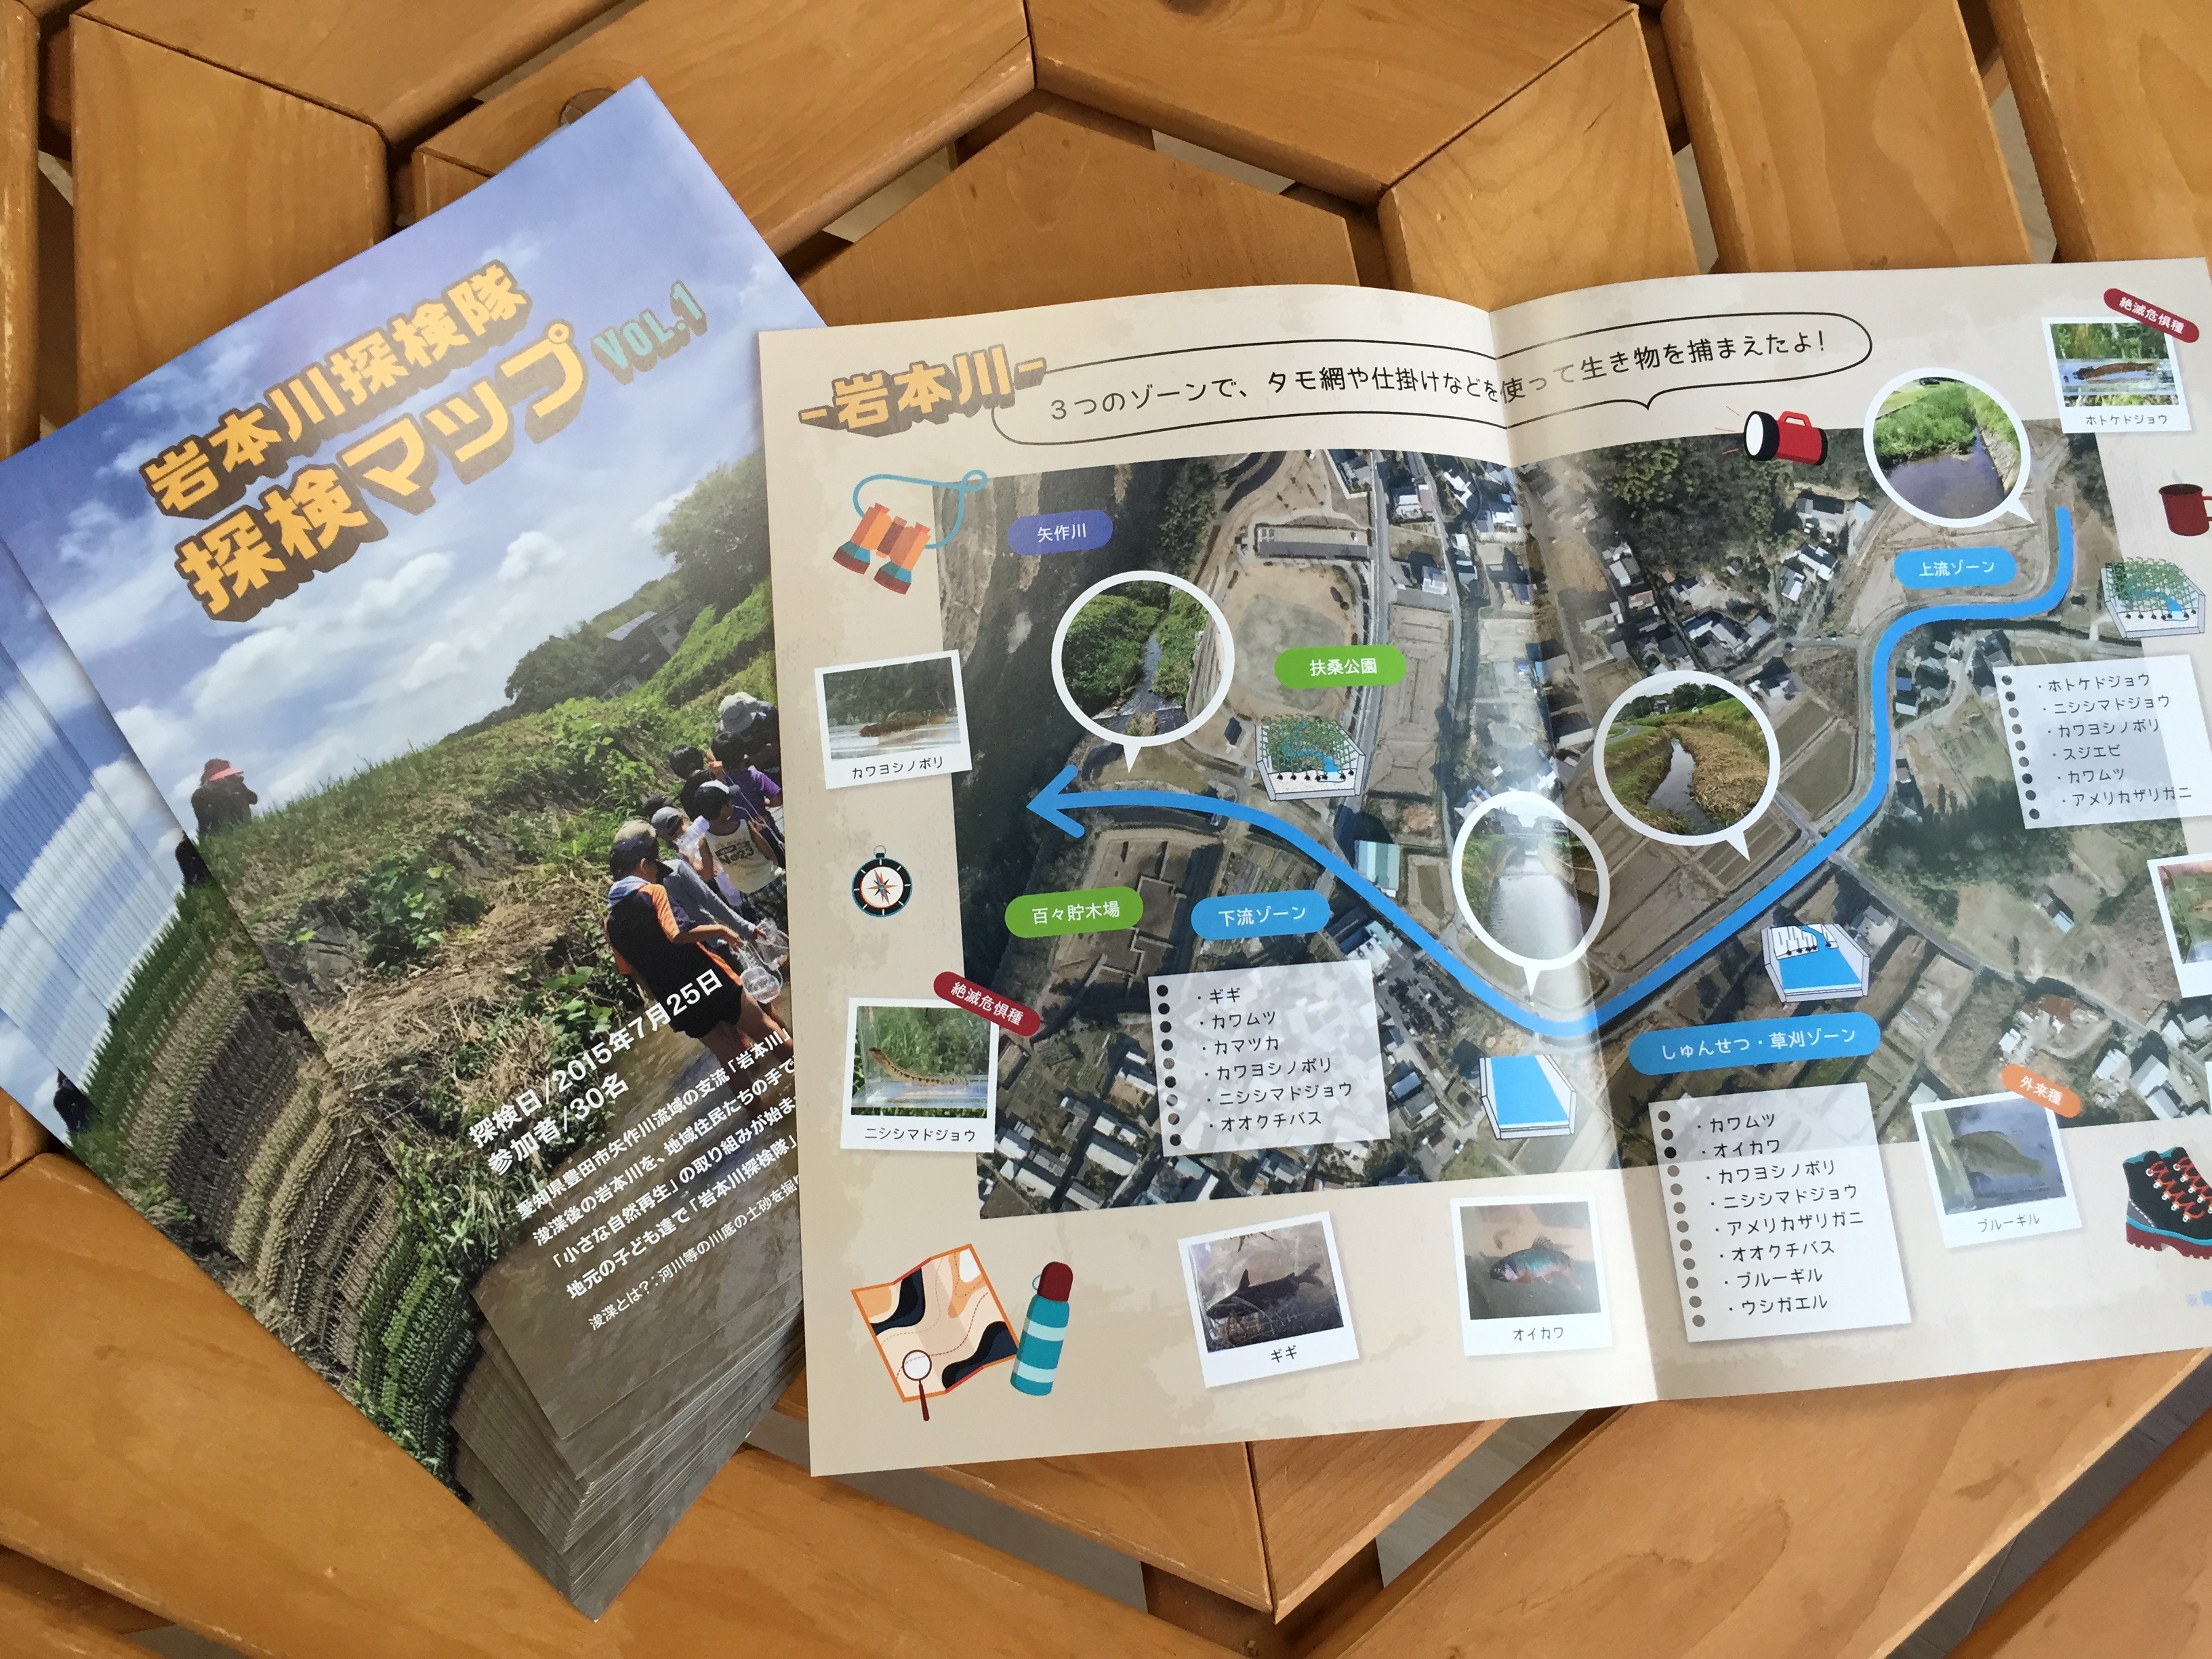 豊田市ふるさとの川づくり事業 岩本川探検隊マップVOL.1を発行しました